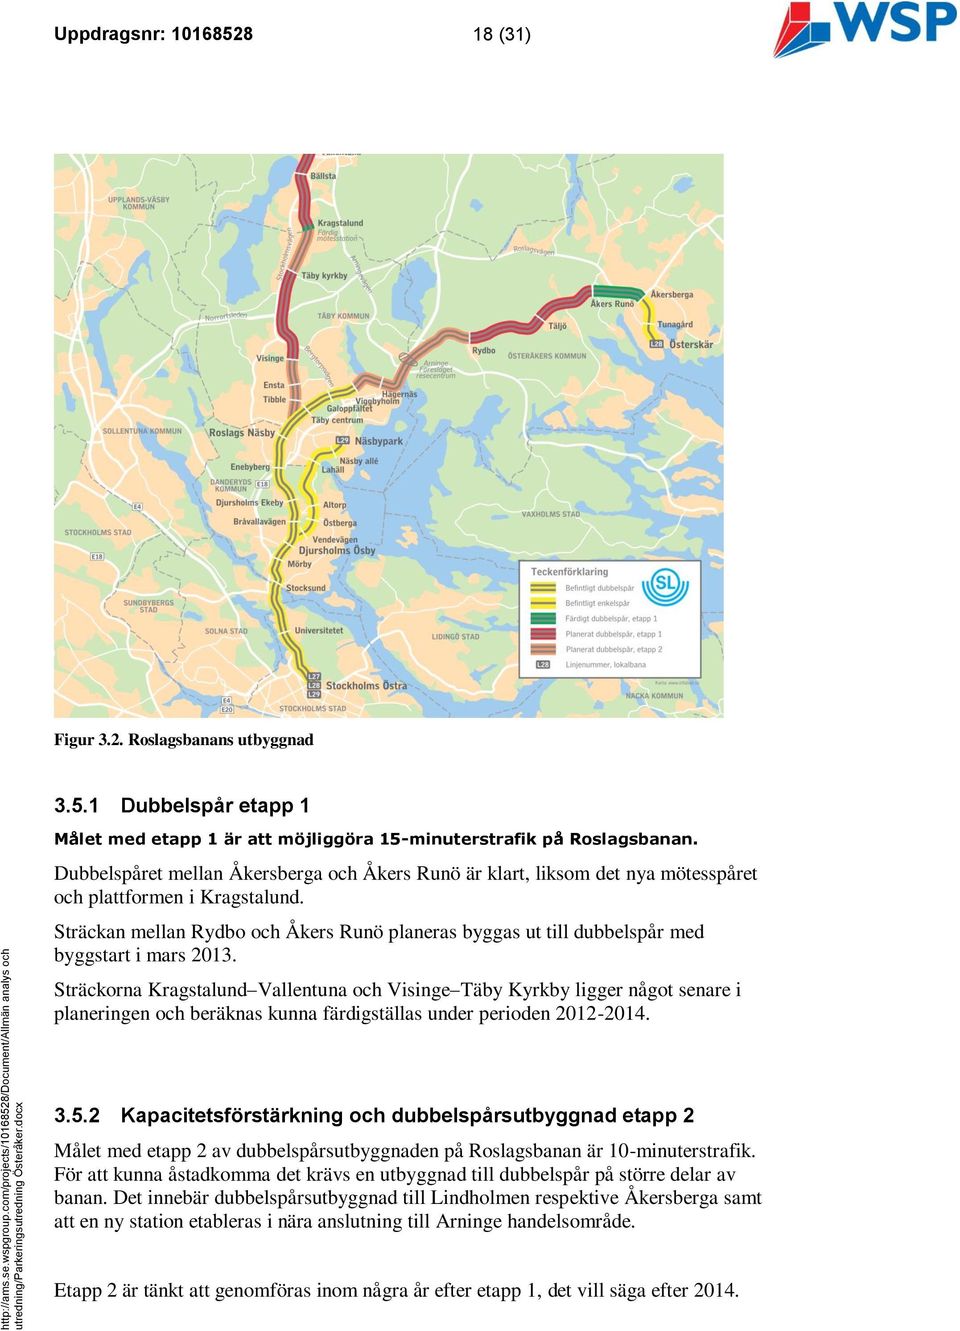 Sträckan mellan Rydbo och Åkers Runö planeras byggas ut till dubbelspår med byggstart i mars 2013.